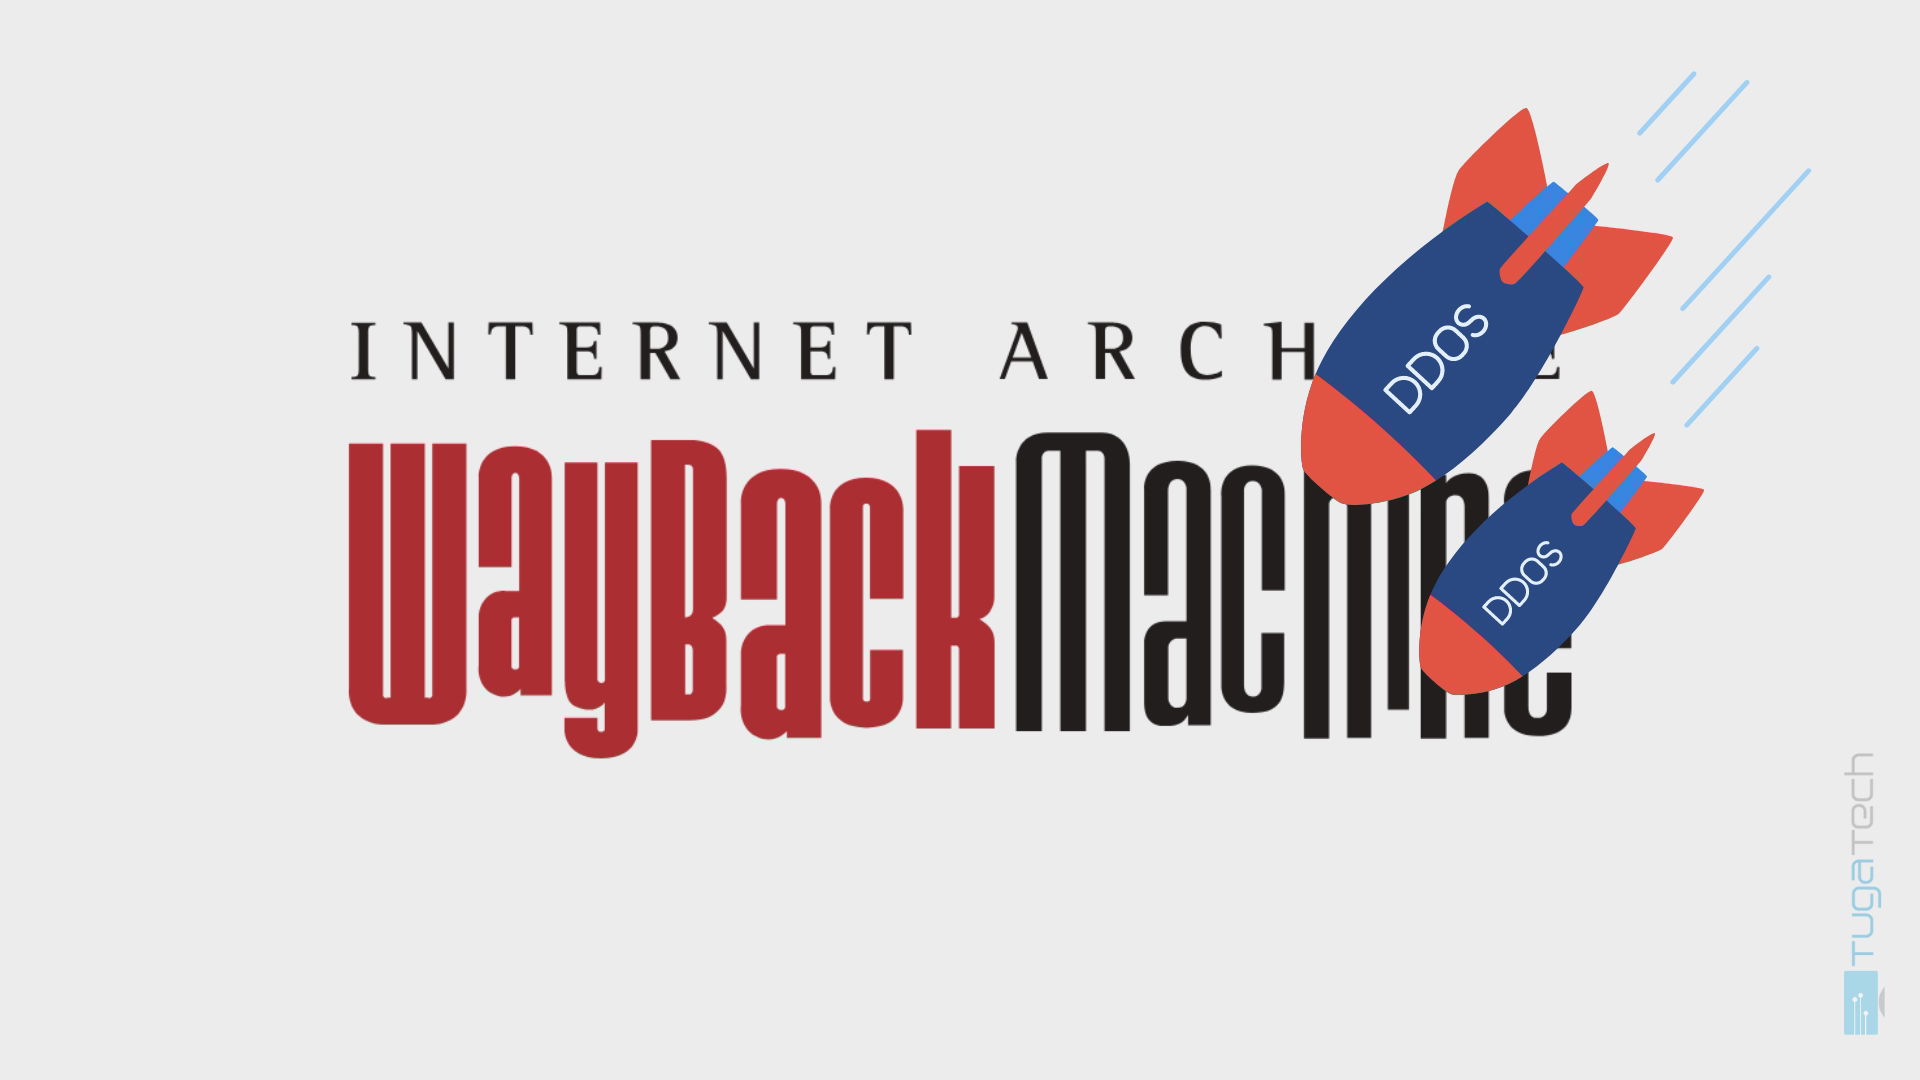 Internet Archive logo a ser atacado por DDoS